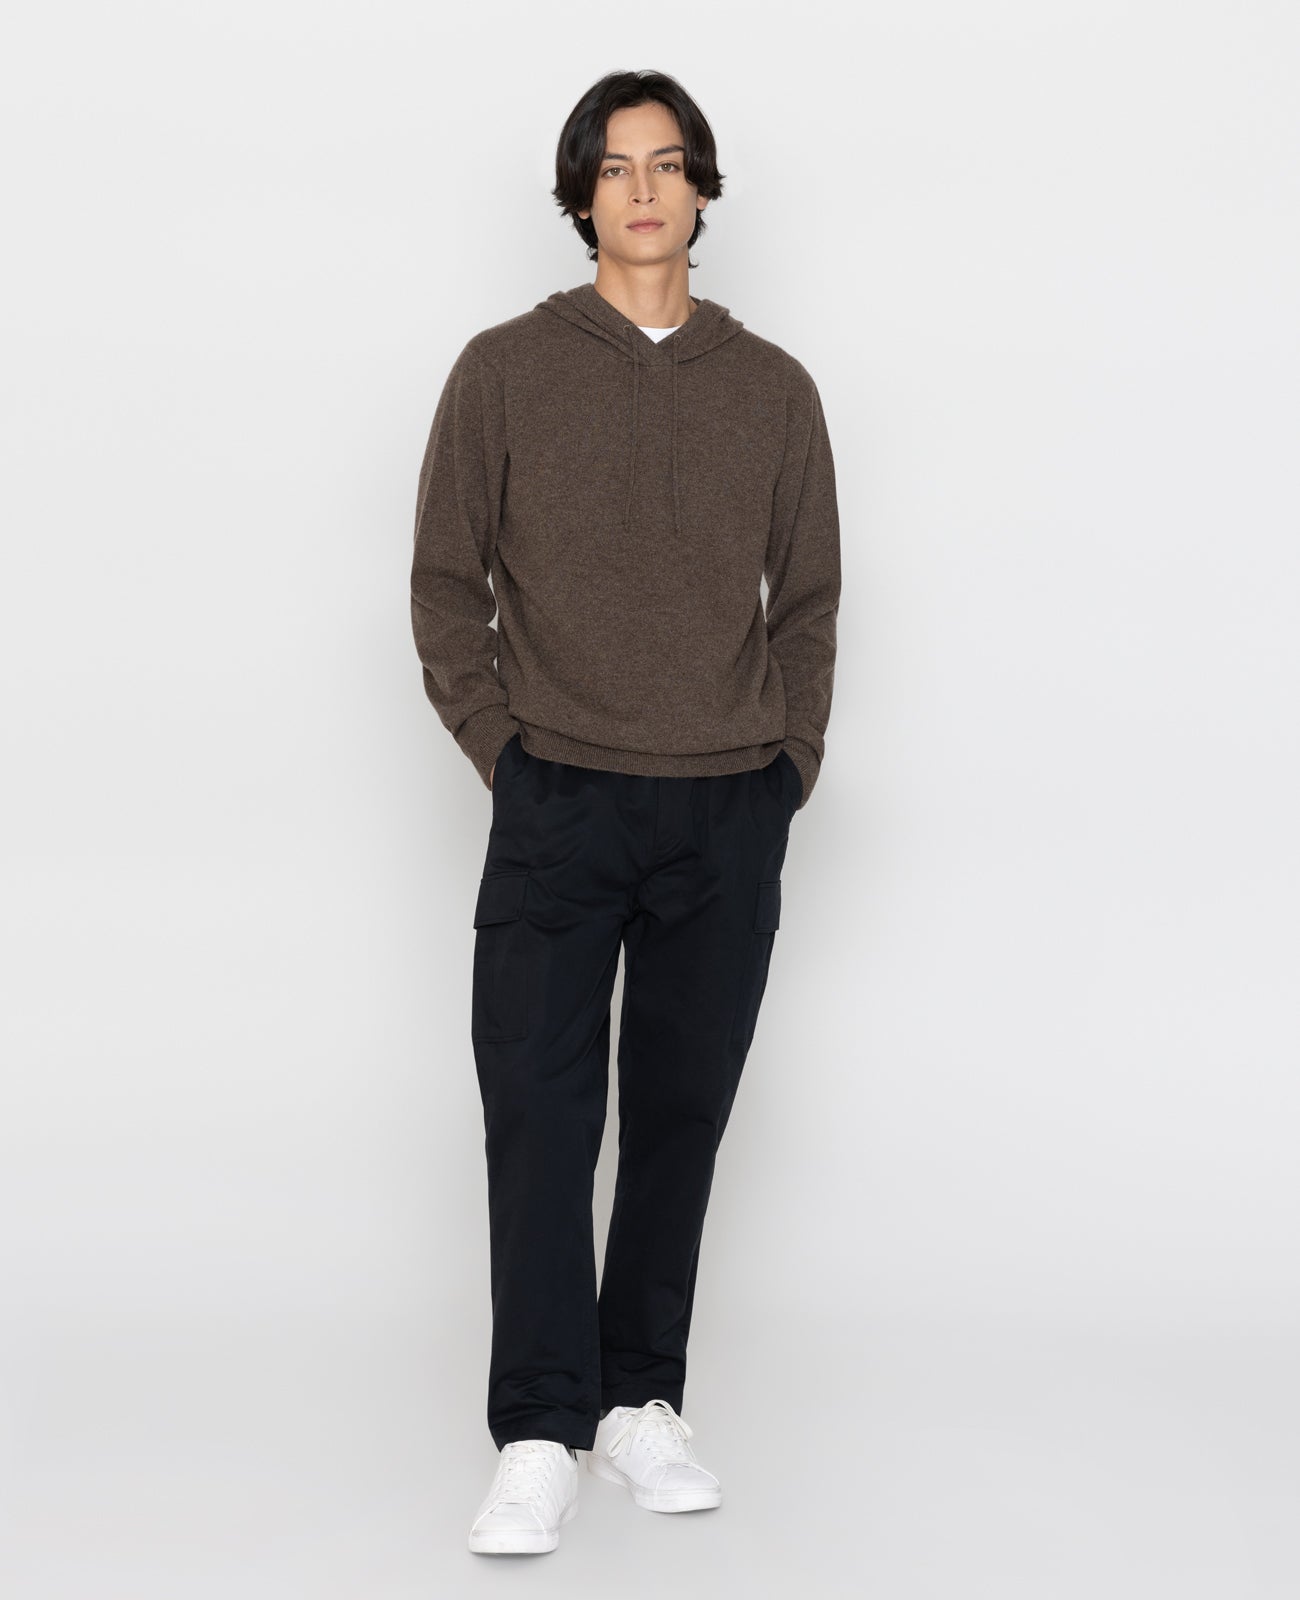 Mongolian Cashmere Jogger  Mens cashmere, Black sweatpants, Cashmere hoodie